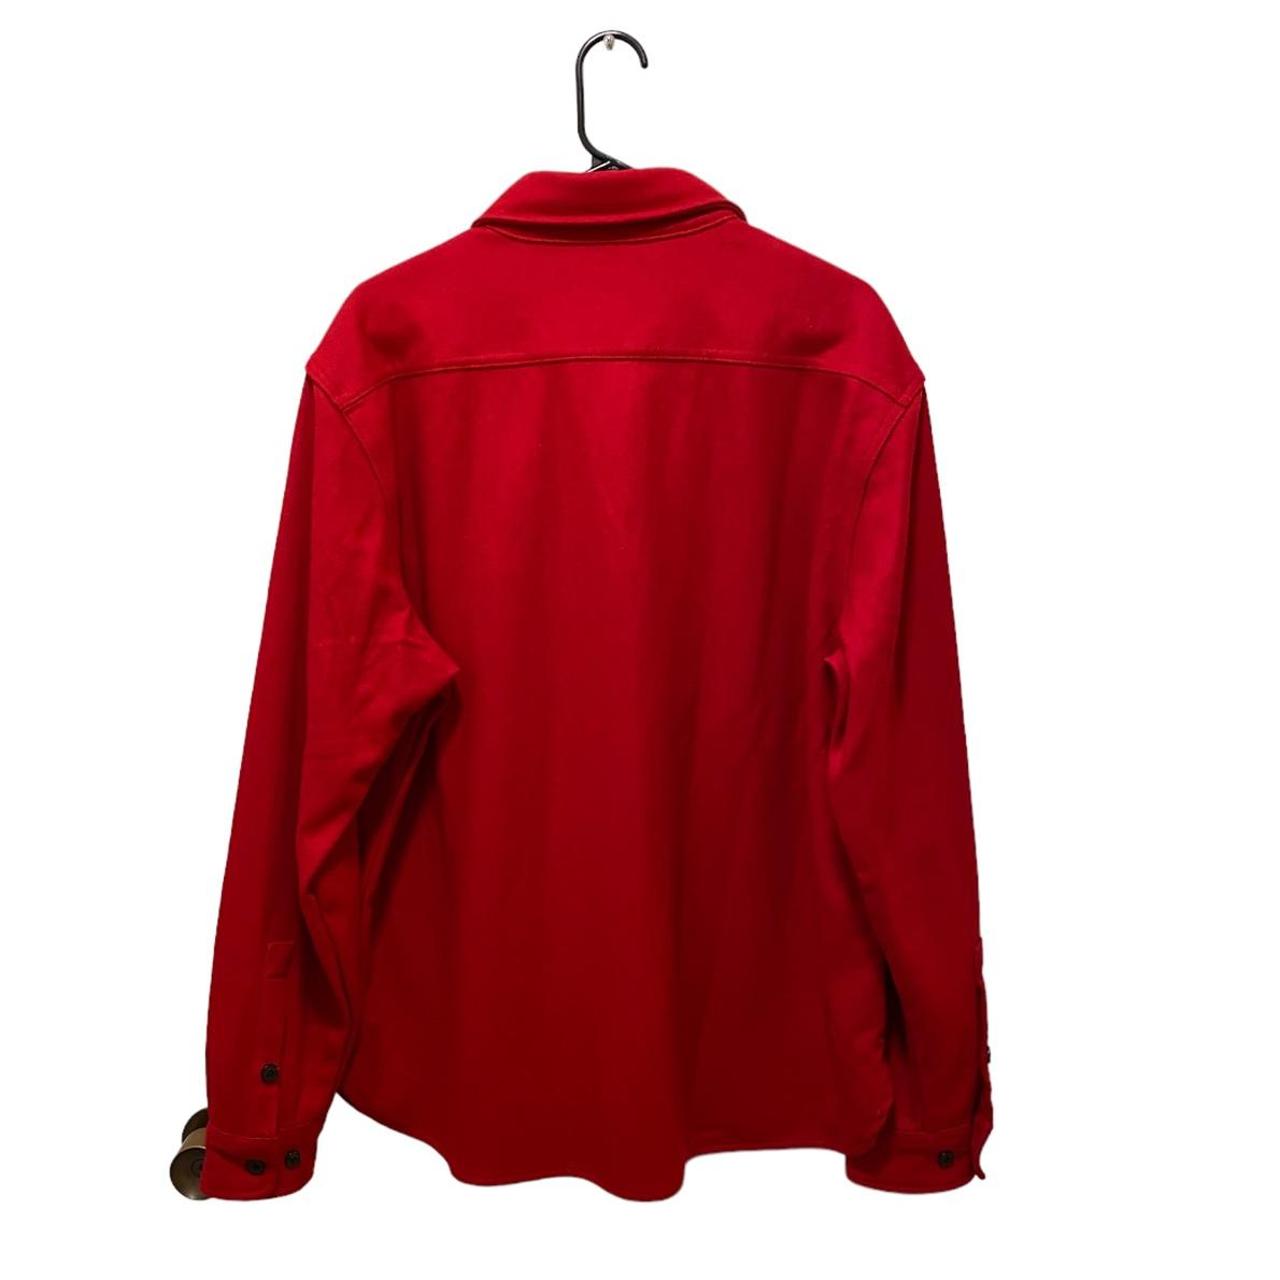 Schott Men's Red and Black Shirt (2)